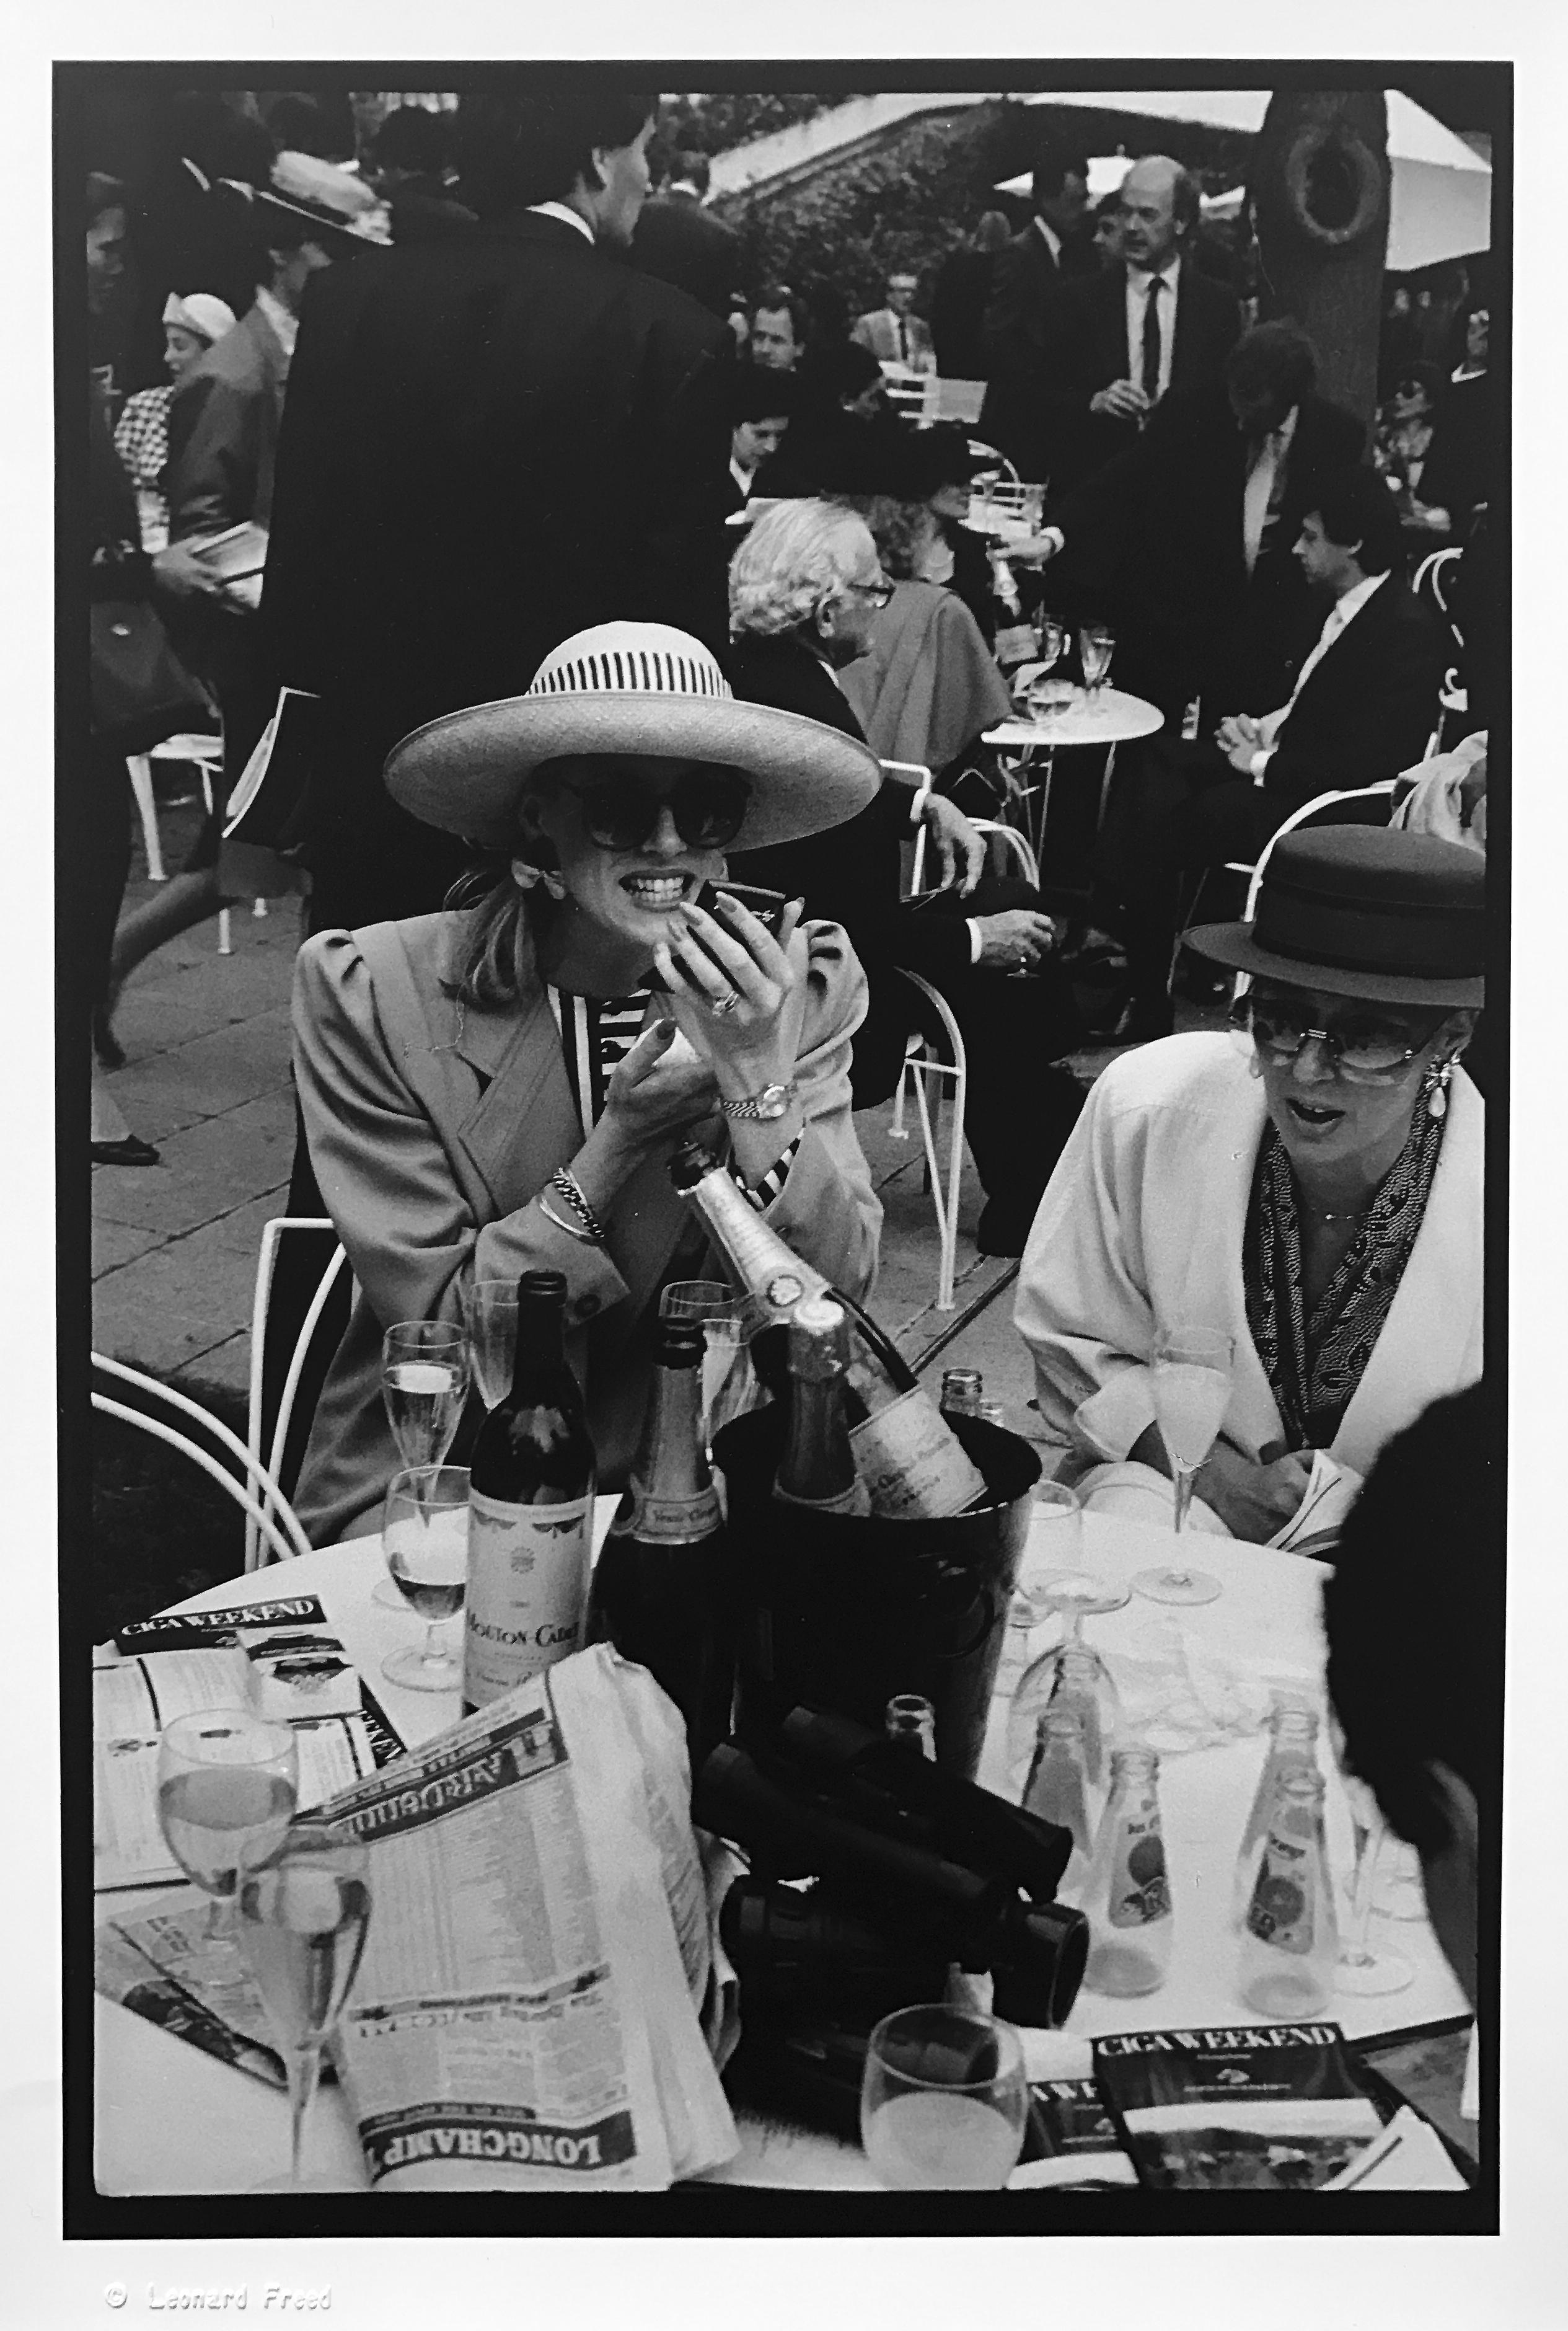 Leonard Freed Portrait Photograph - Paris Longchamp, Vintage Black and White Photograph of Parisian Elite 1980s